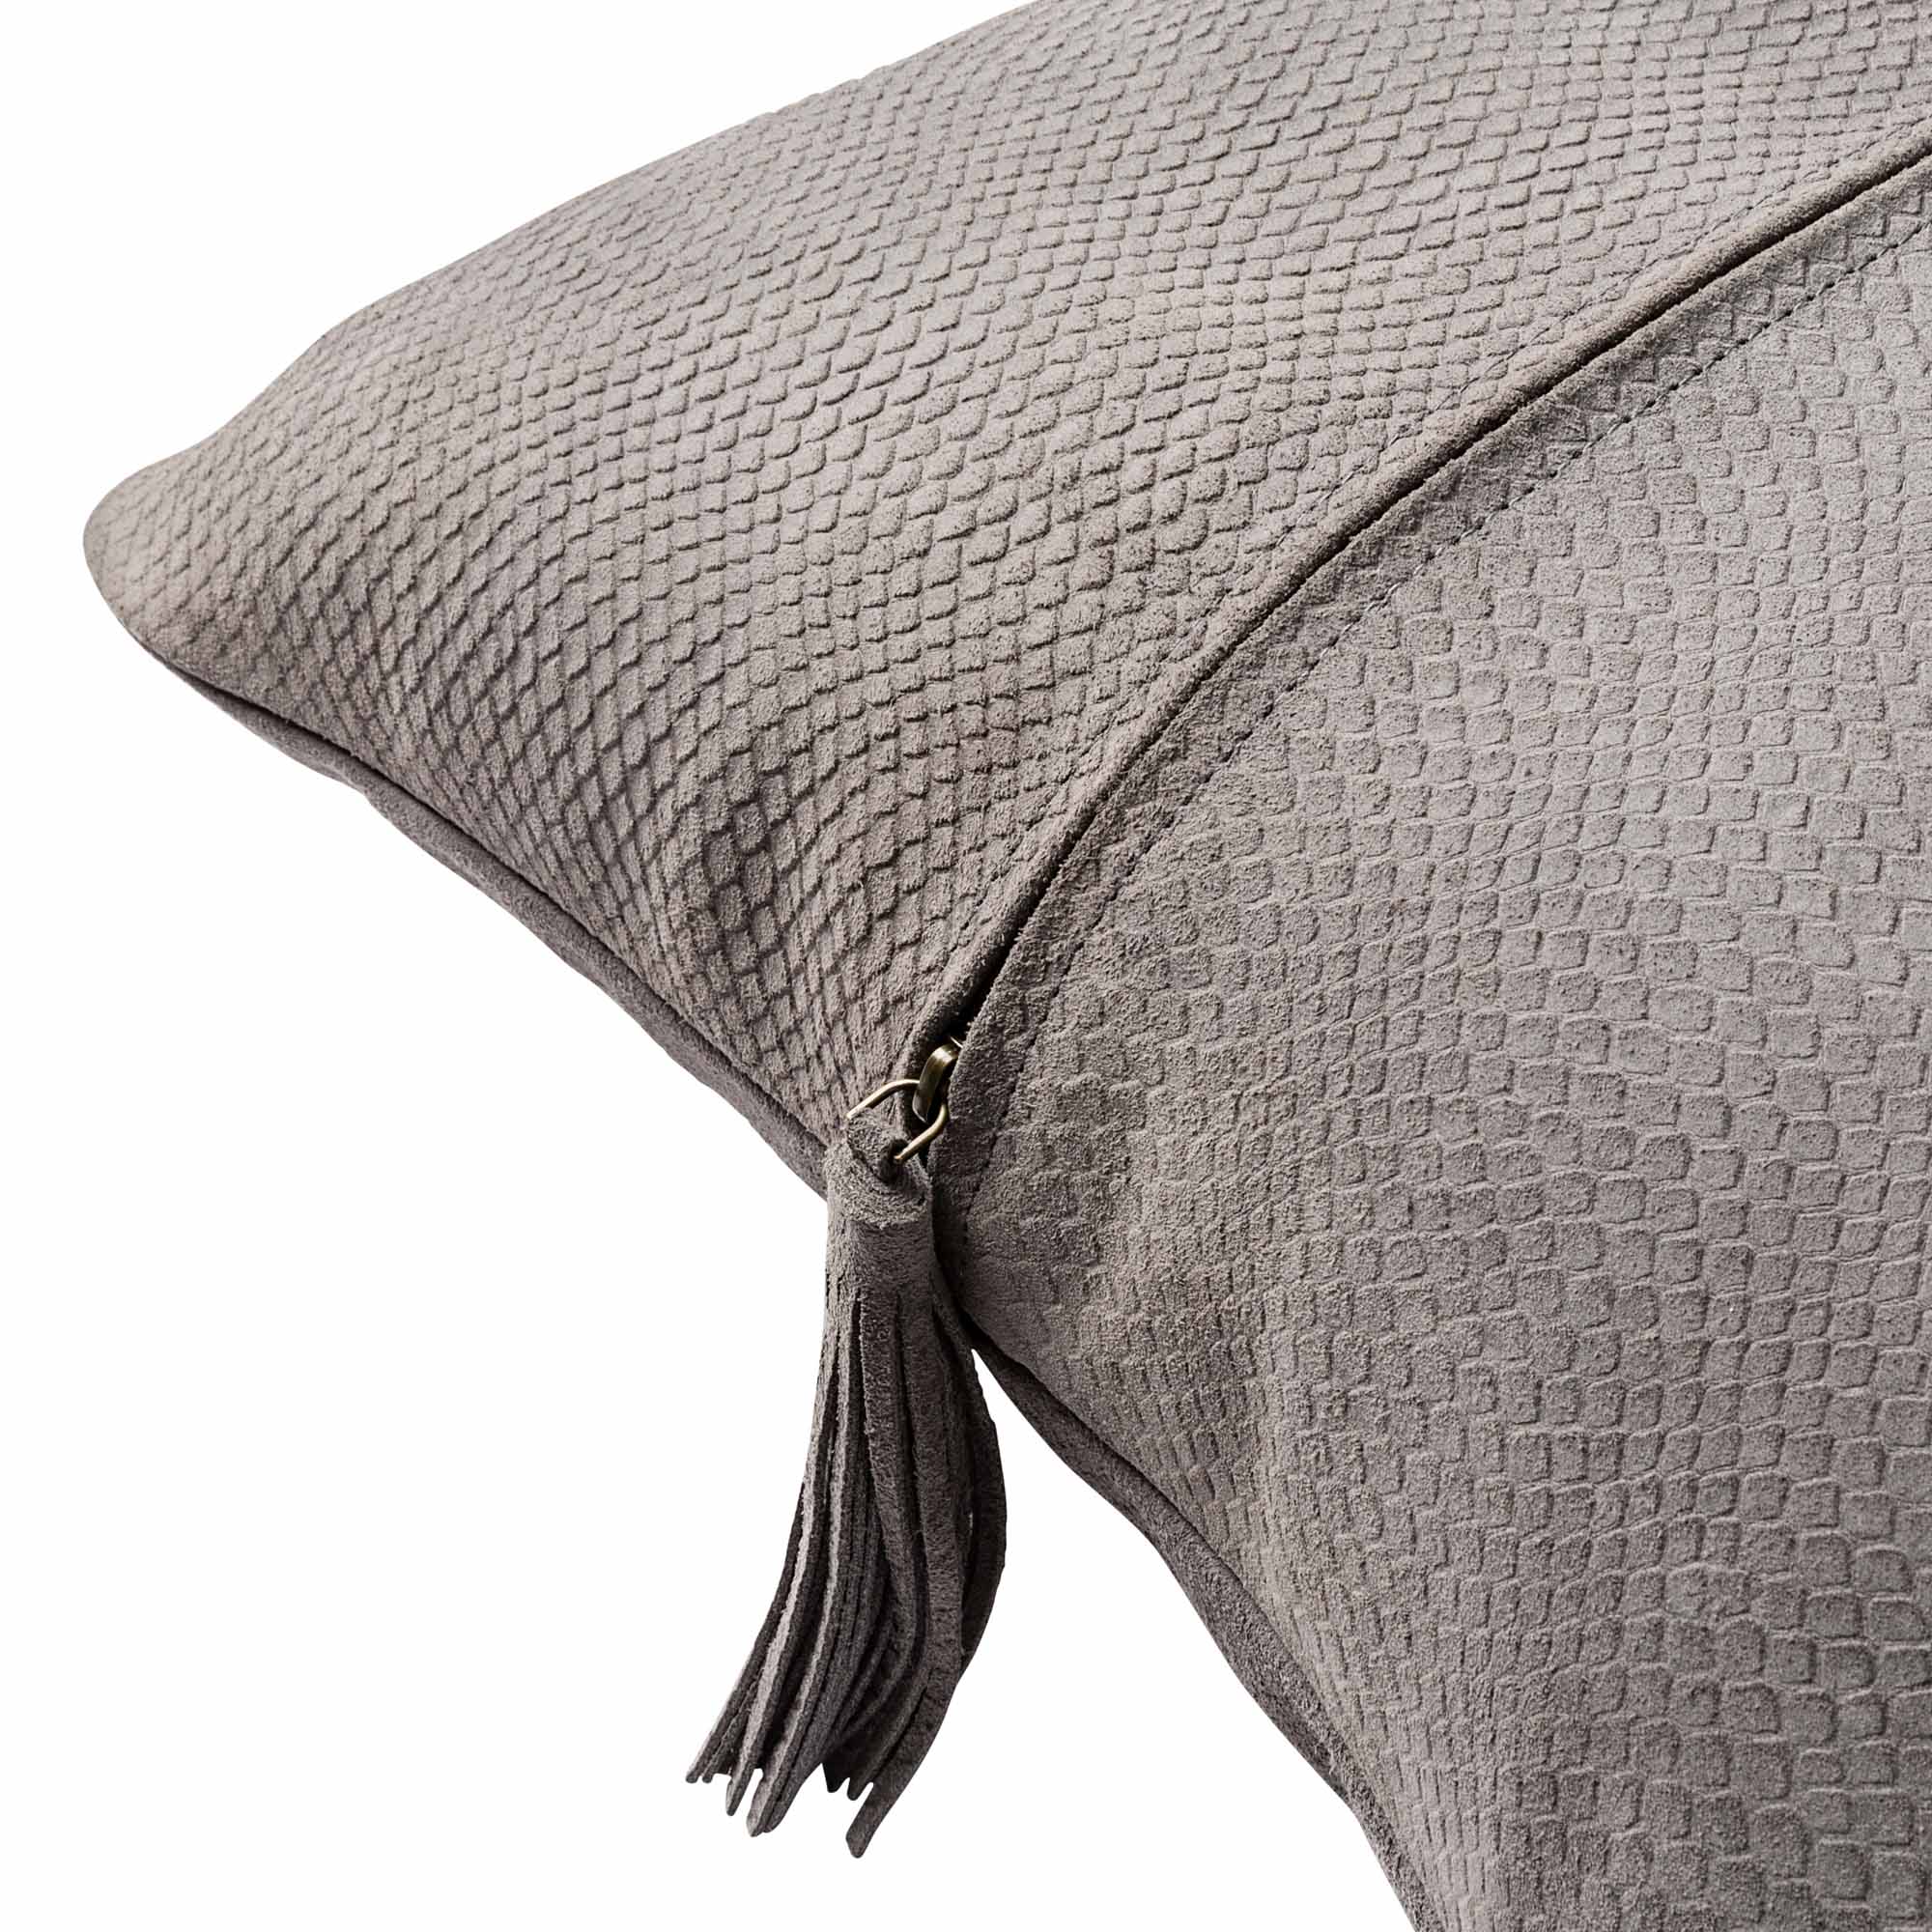 Pelle Leather Cushion Dark Grey 48x48